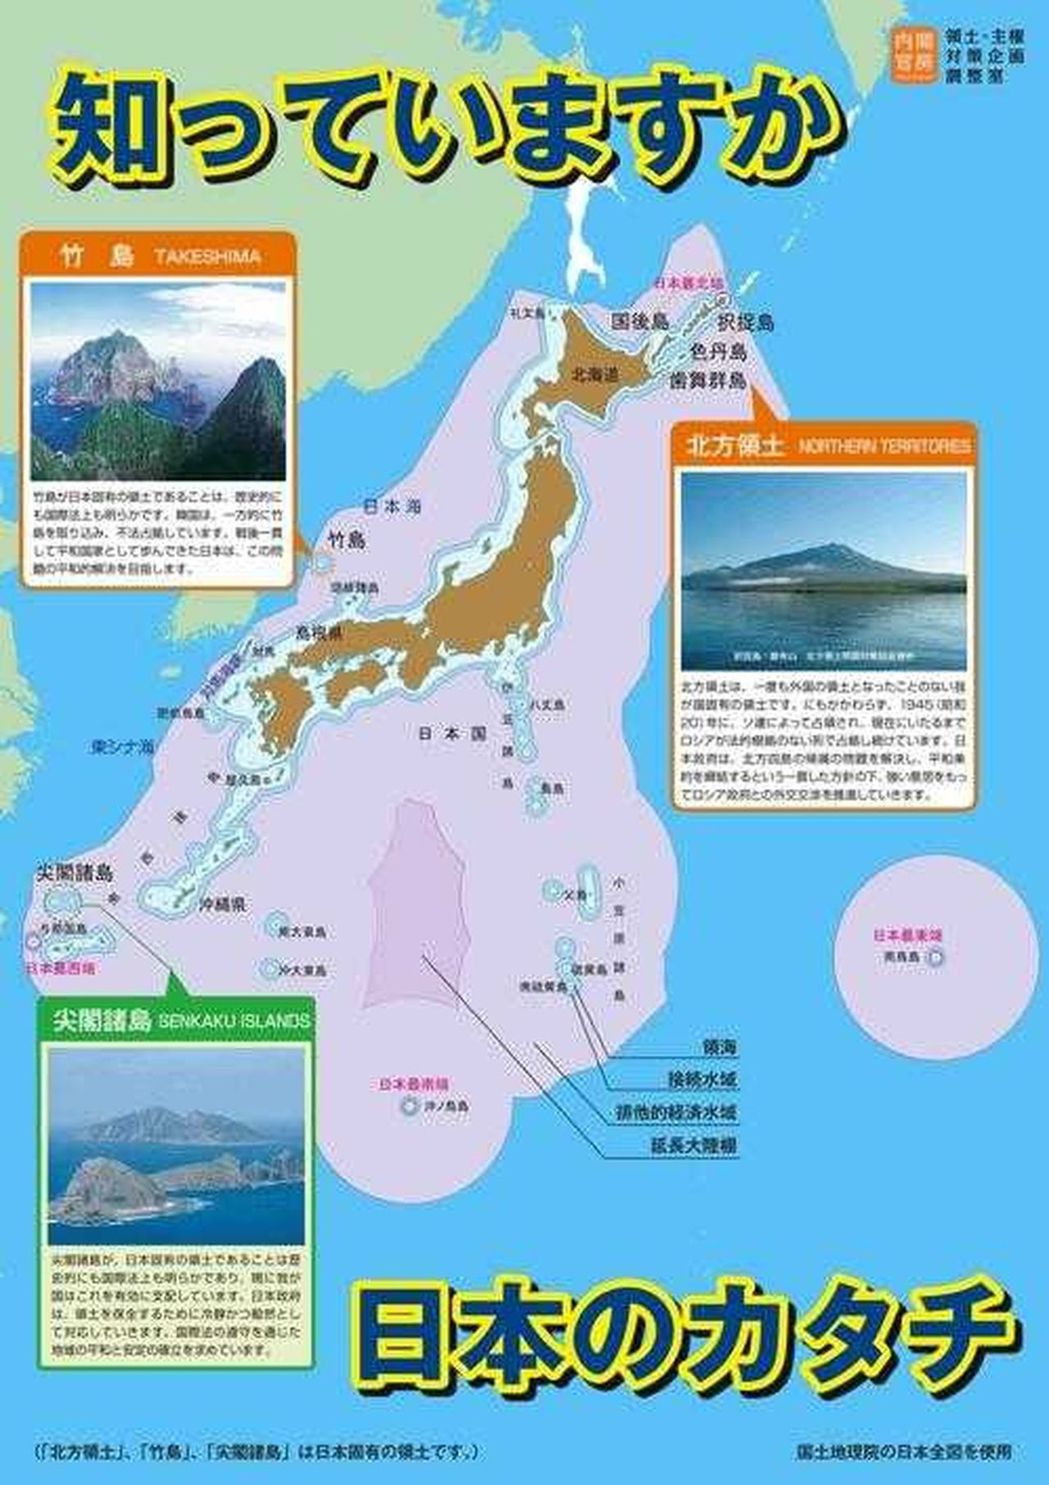 日本新幹線張貼的海報，將釣魚島、獨島標記為「日本領土」。取材自環球網